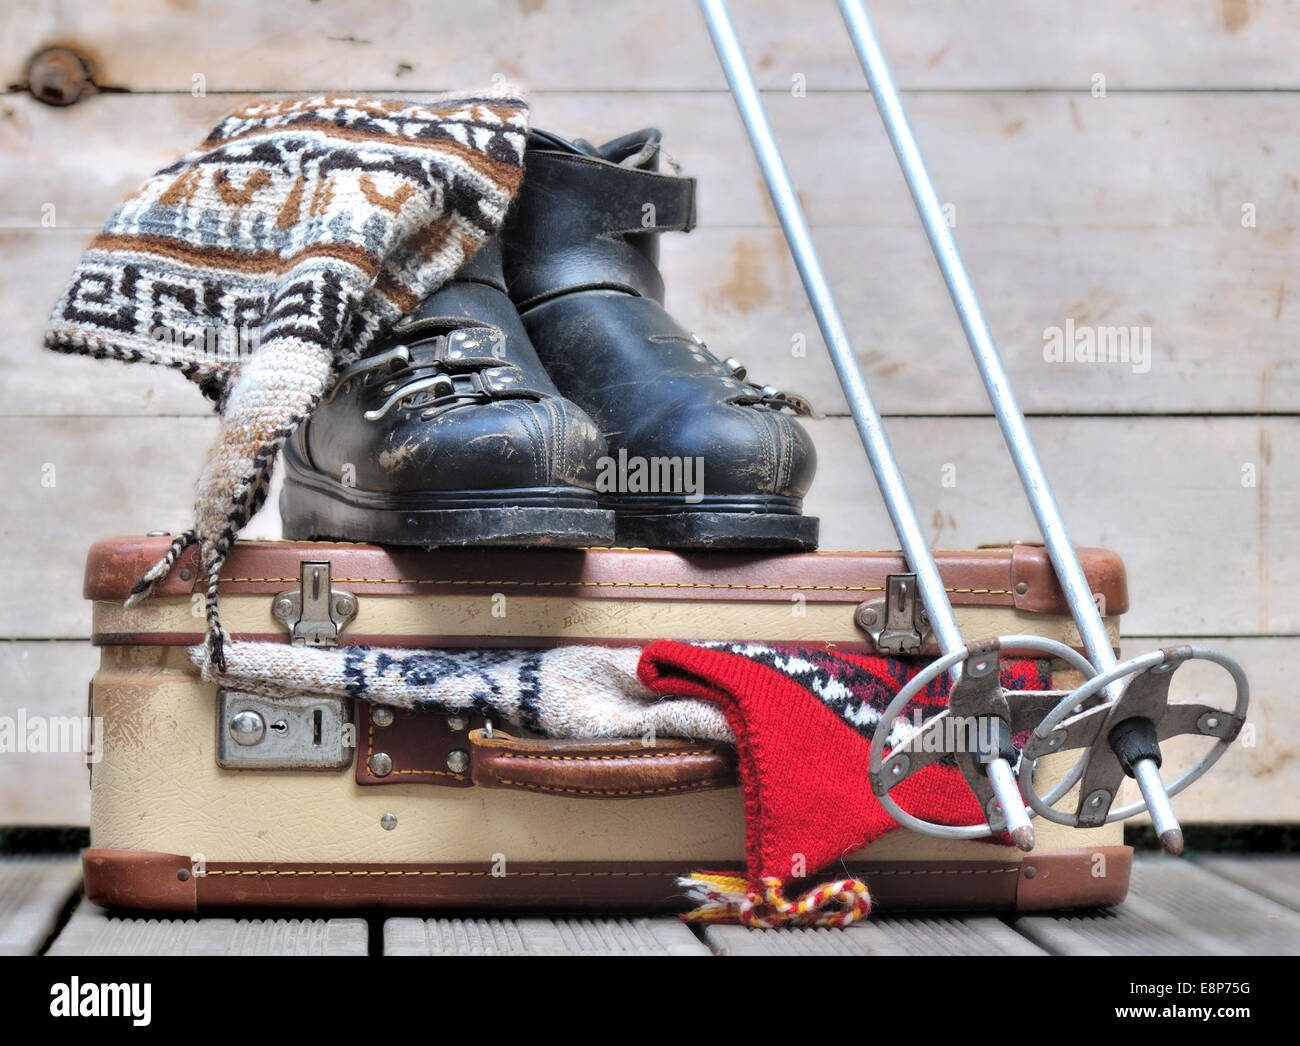 Vieilles chaussures de ski sur une petite valise pleine de vêtements chauds Banque D'Images